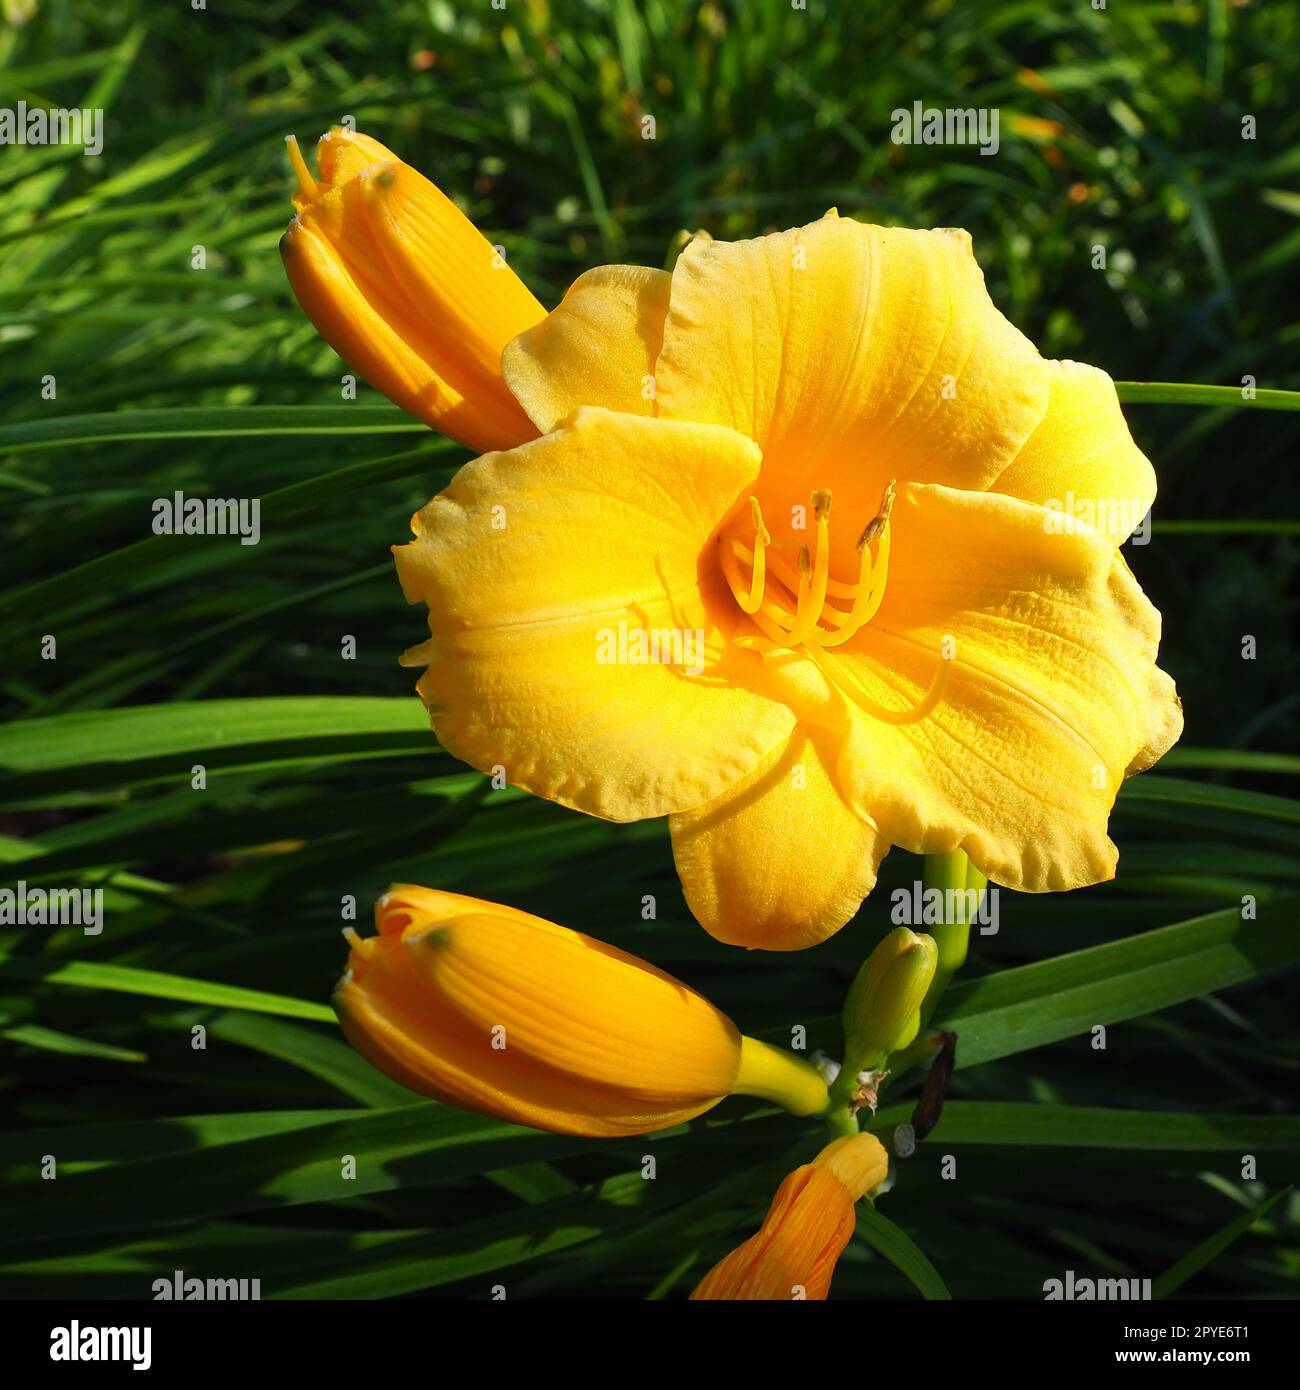 Daylily, o bellissimo giallo limone, è una pianta erbacea perenne splendidamente fiorita. Foglie verdi lunghe e sottili. Fioritura come hobby. Hemerocallis lilioasphodelus varietà gialla. Foto Stock